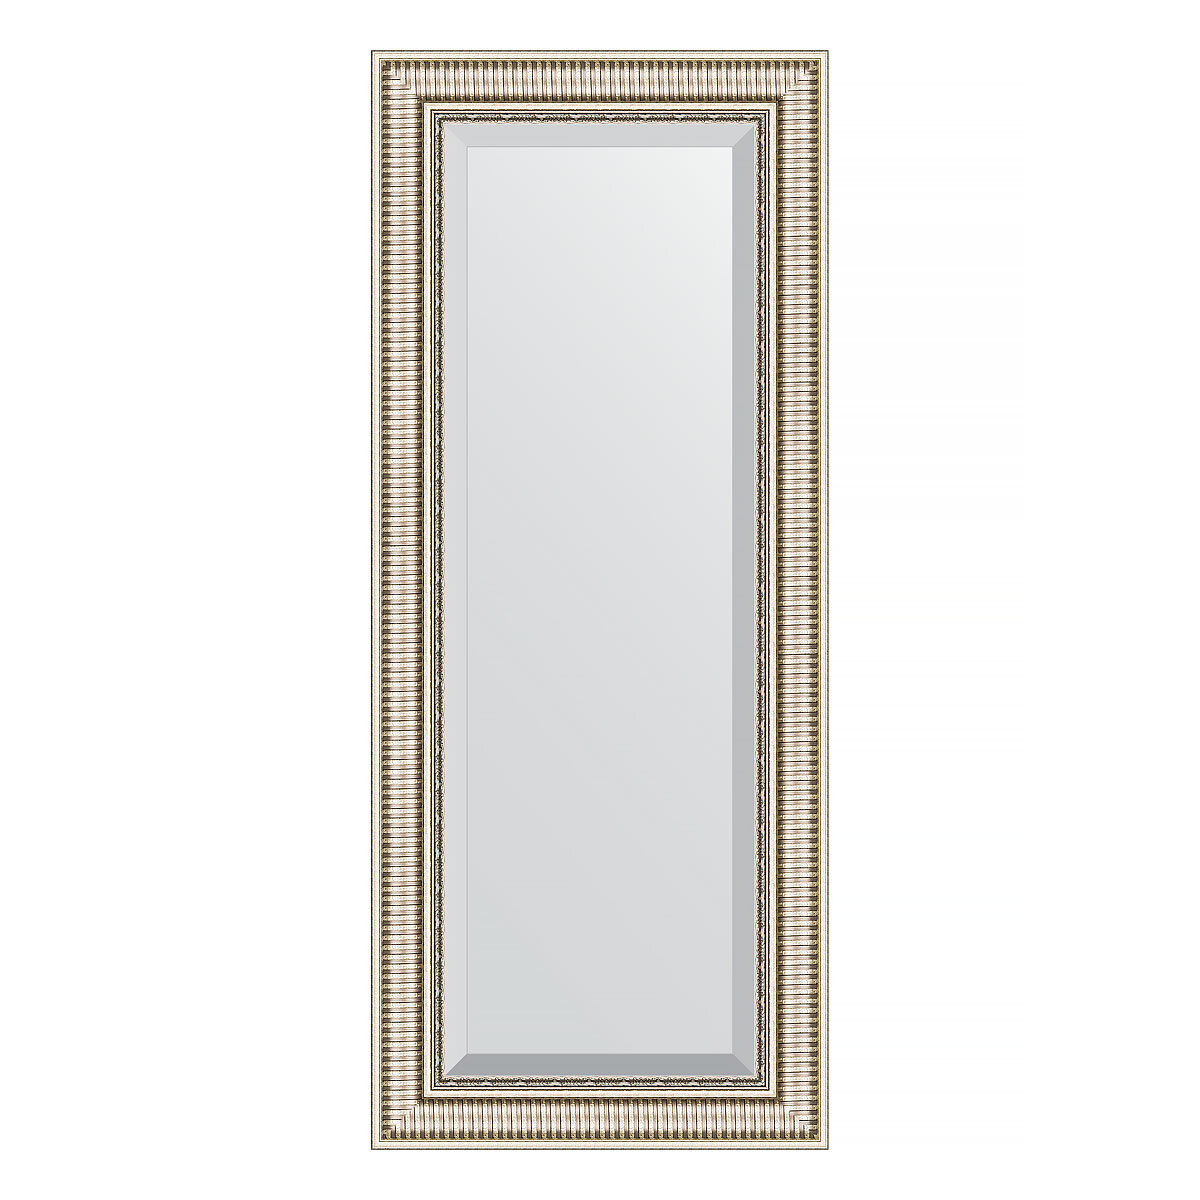 Зеркало настенное с фацетом EVOFORM в багетной раме серебряный акведук, 57х137 см, для гостиной, прихожей, спальни и ванной комнаты, BY 1258